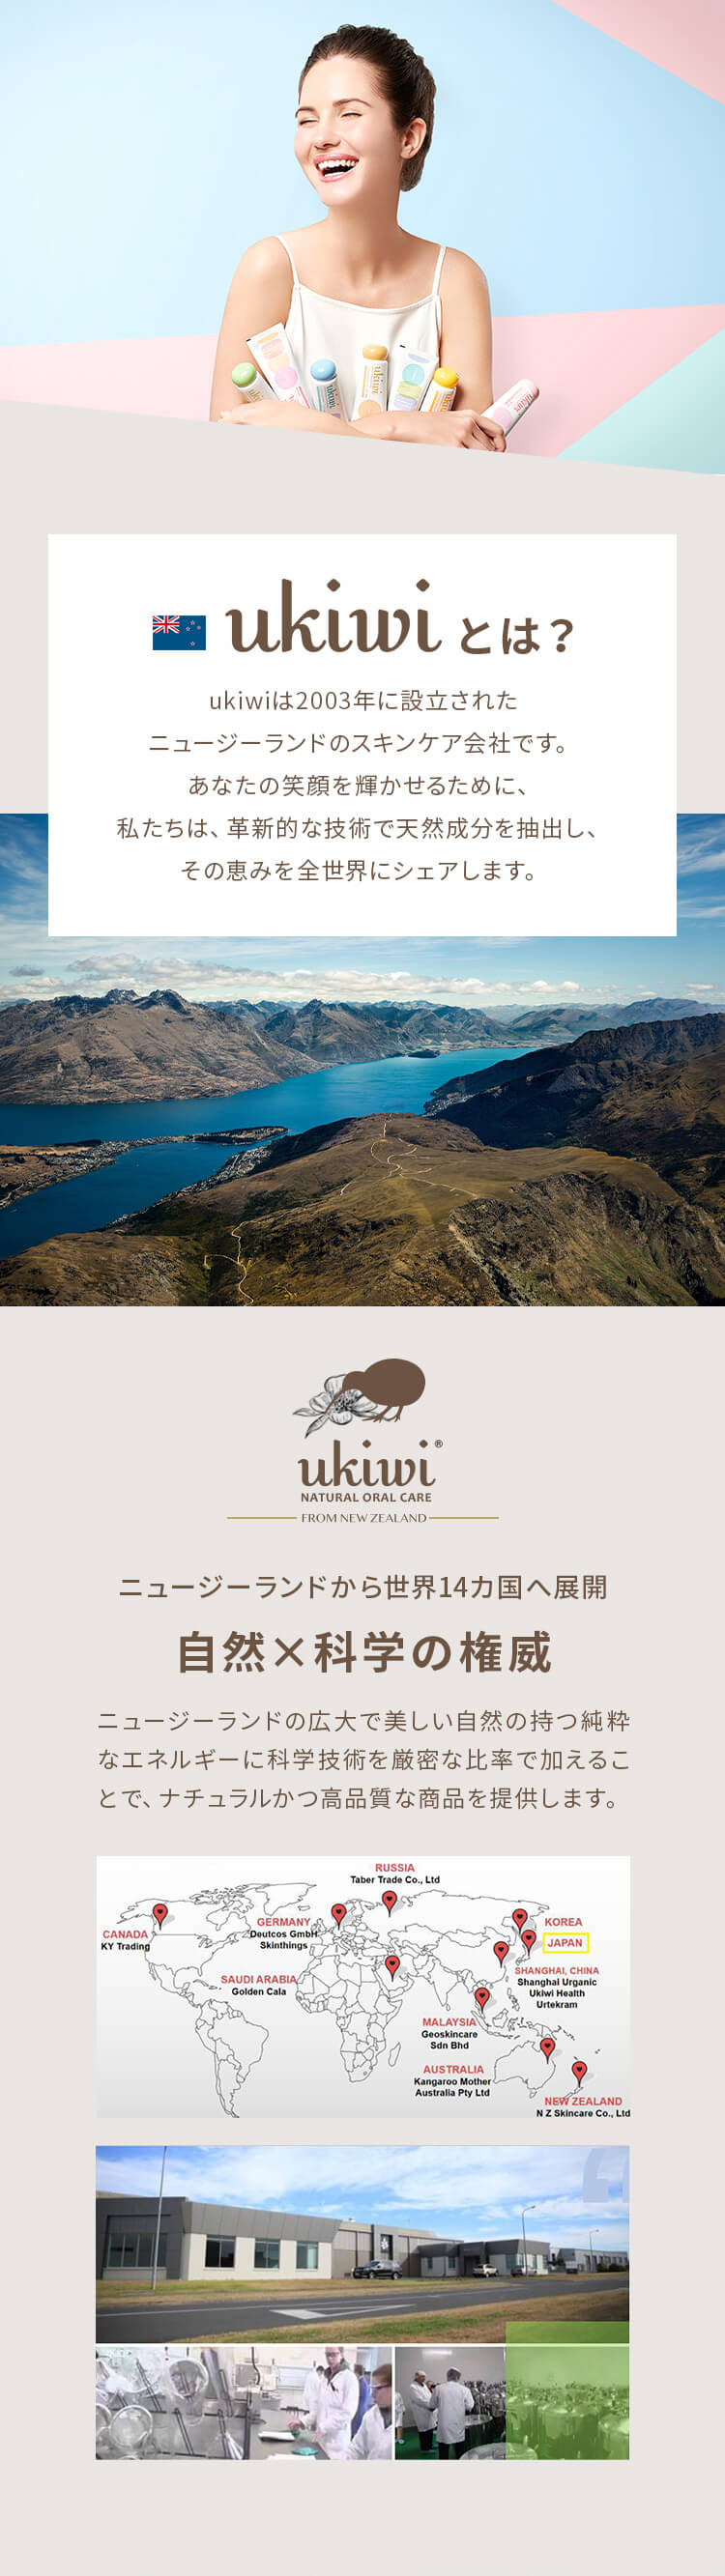 ukiwiはニュージーランドのスキンケア会社で、あなたの笑顔を輝かせるために私たちは革新的な技術で天然成分を抽出し、その恵みを全世界にシェアします